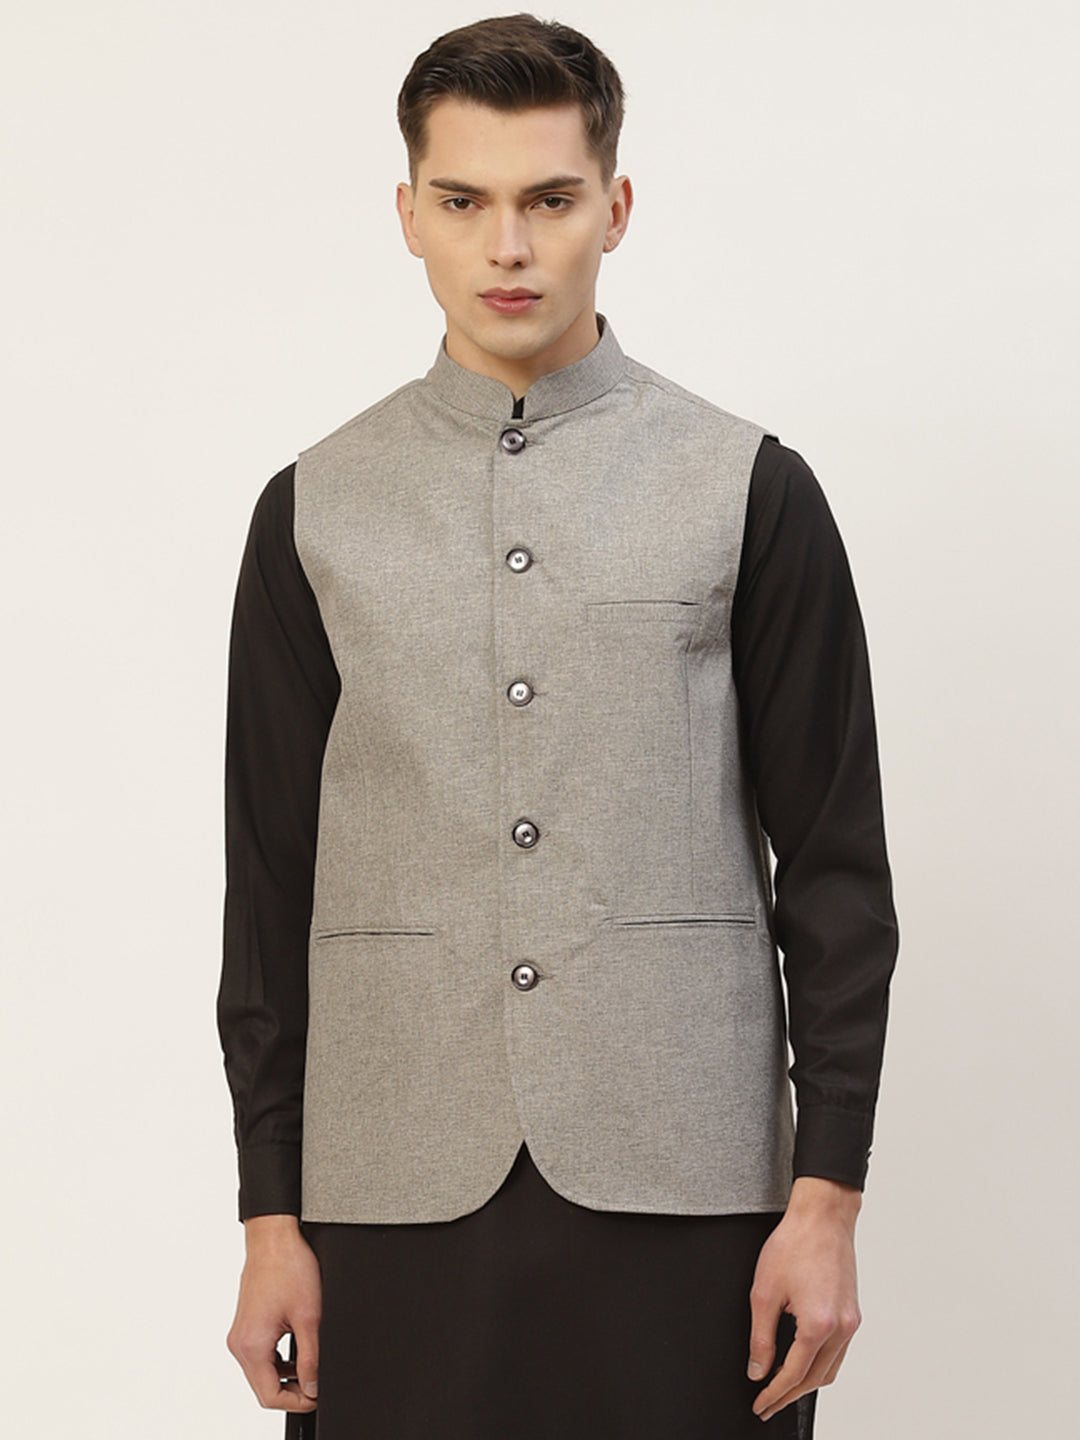 Jompers Men's Grey Solid Nehru Jacket